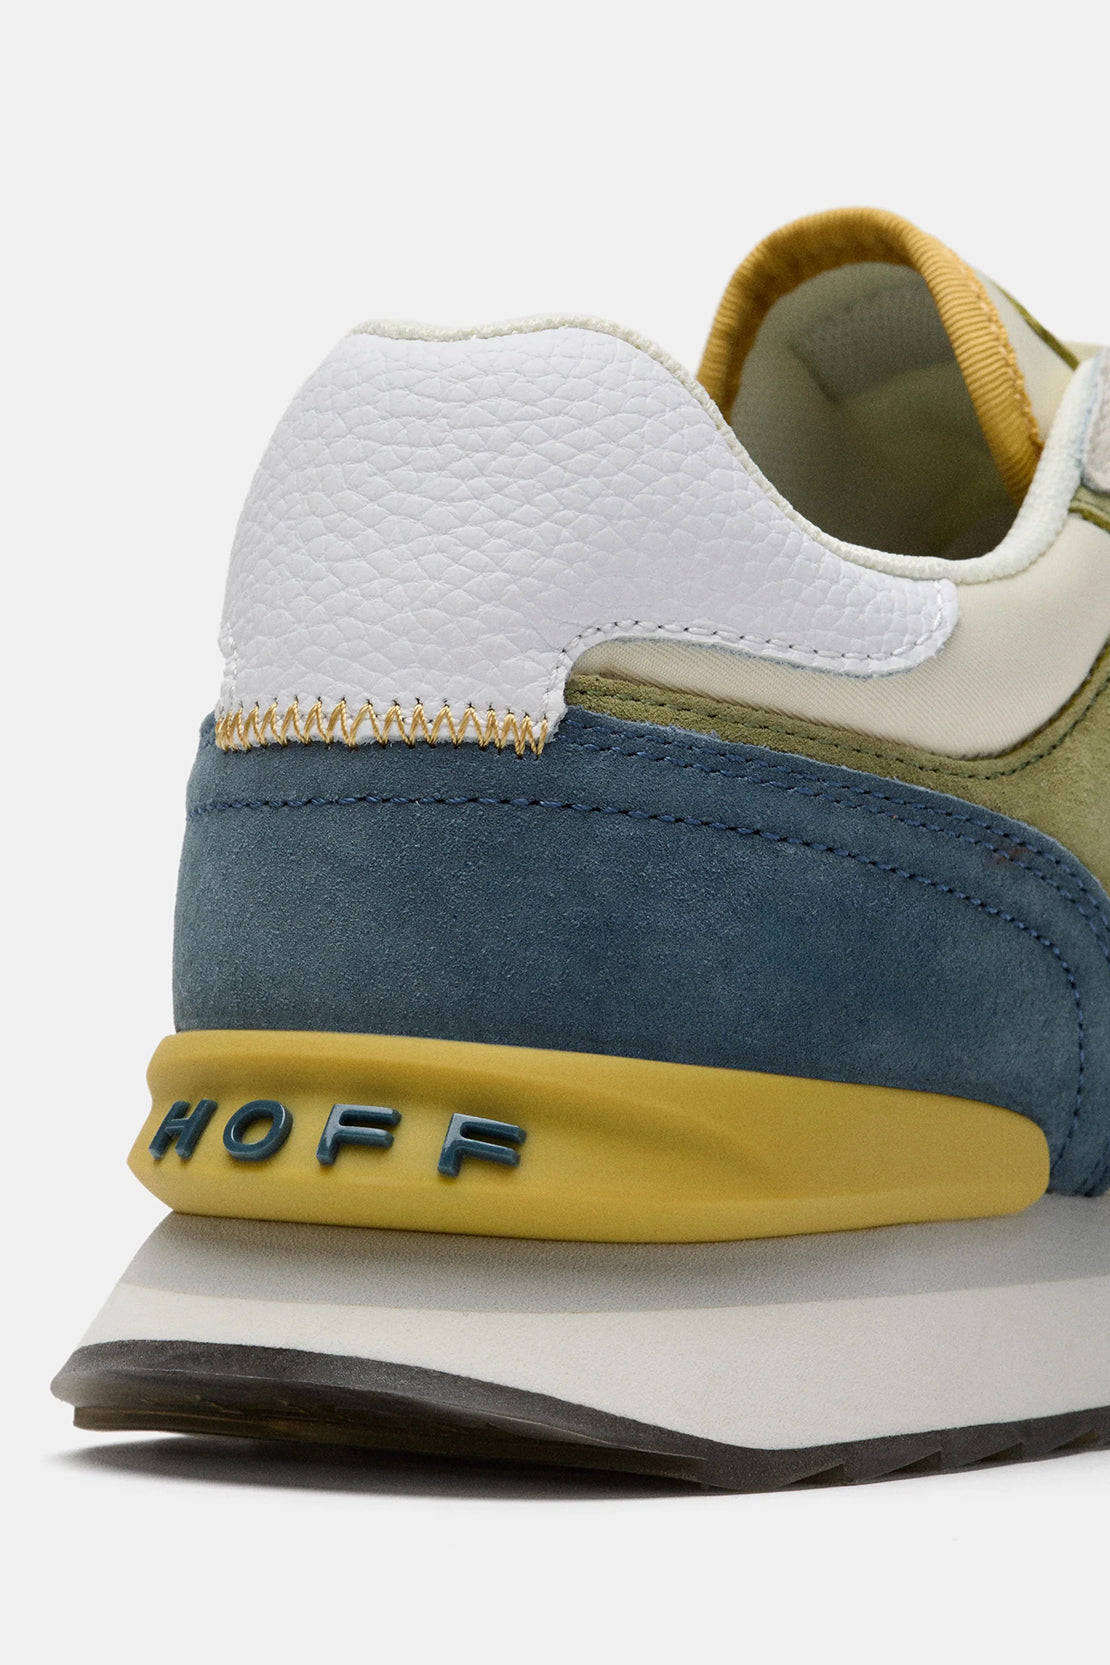 HOFF - MONTE CARLO - City Sneakers